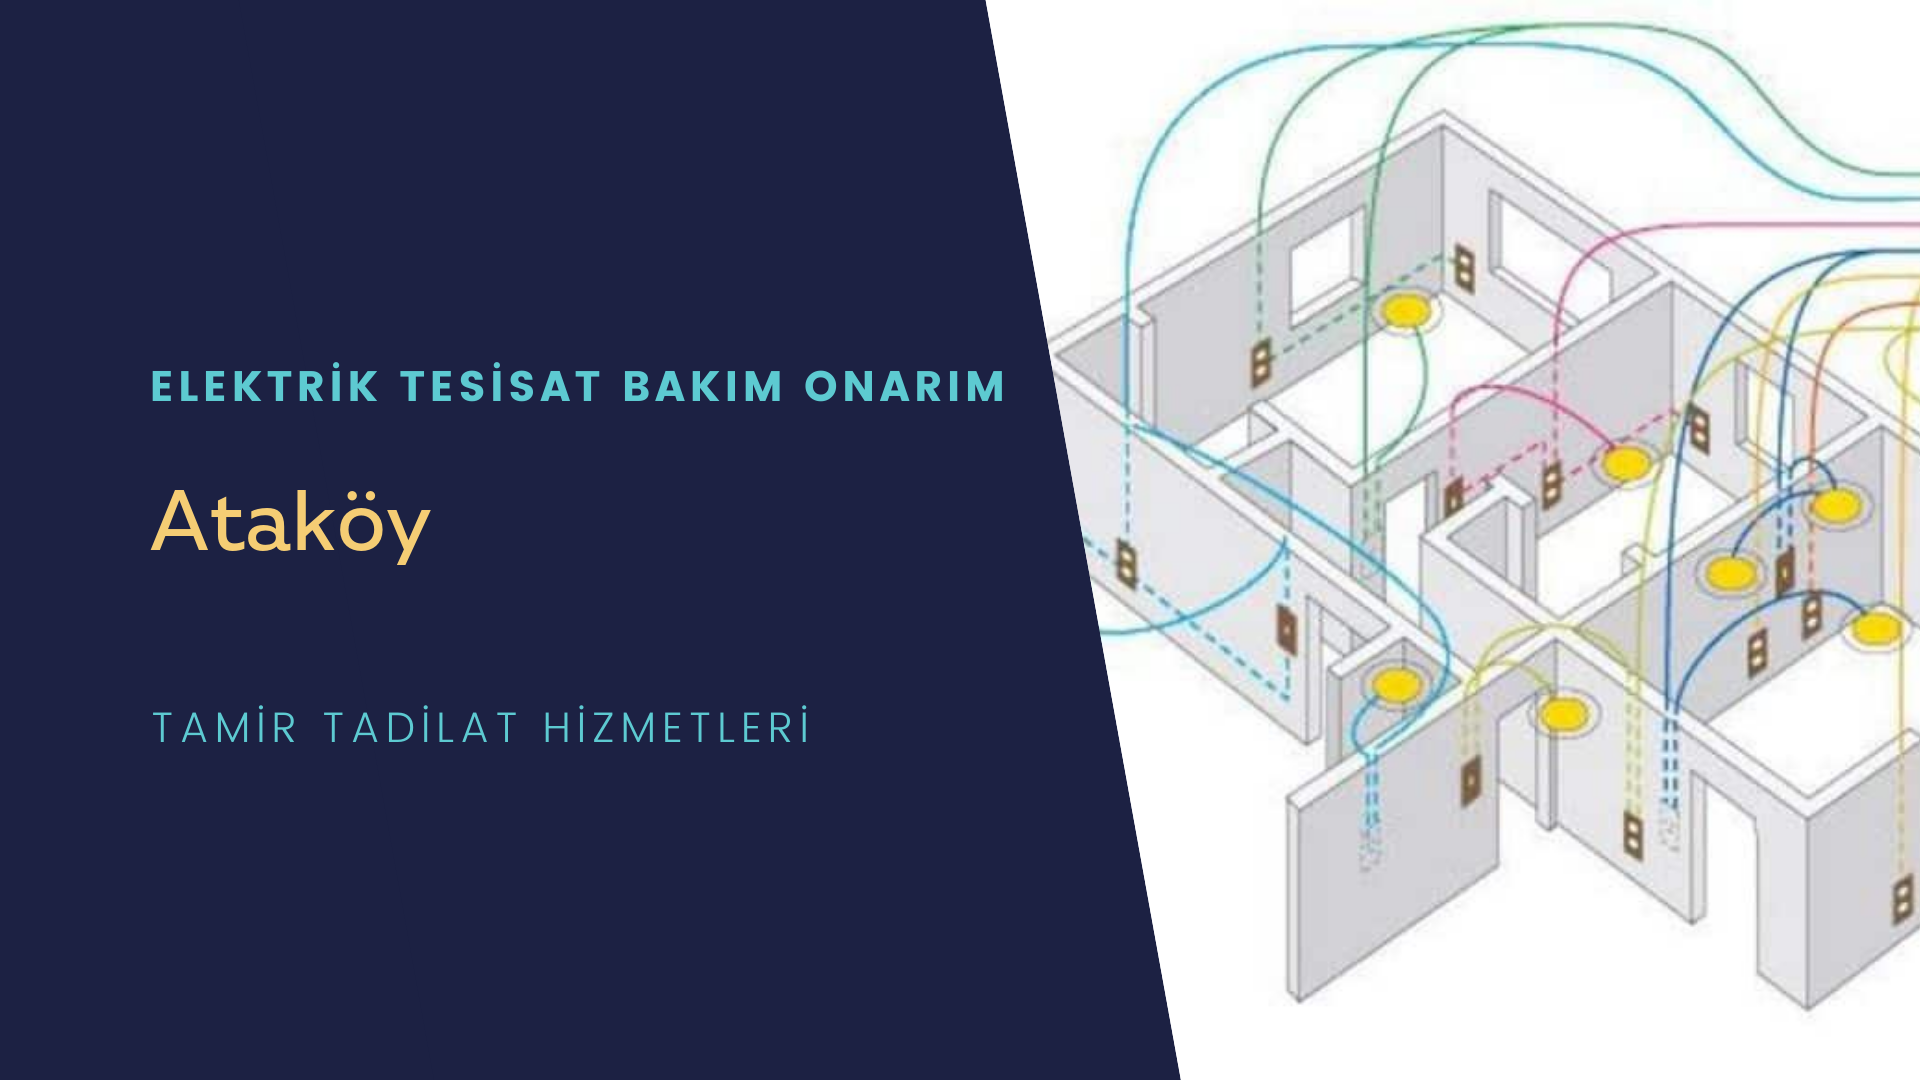 Ataköy'de elektrik tesisatı ustalarımı arıyorsunuz doğru adrestenizi Ataköy elektrik tesisatı ustalarımız 7/24 sizlere hizmet vermekten mutluluk duyar.